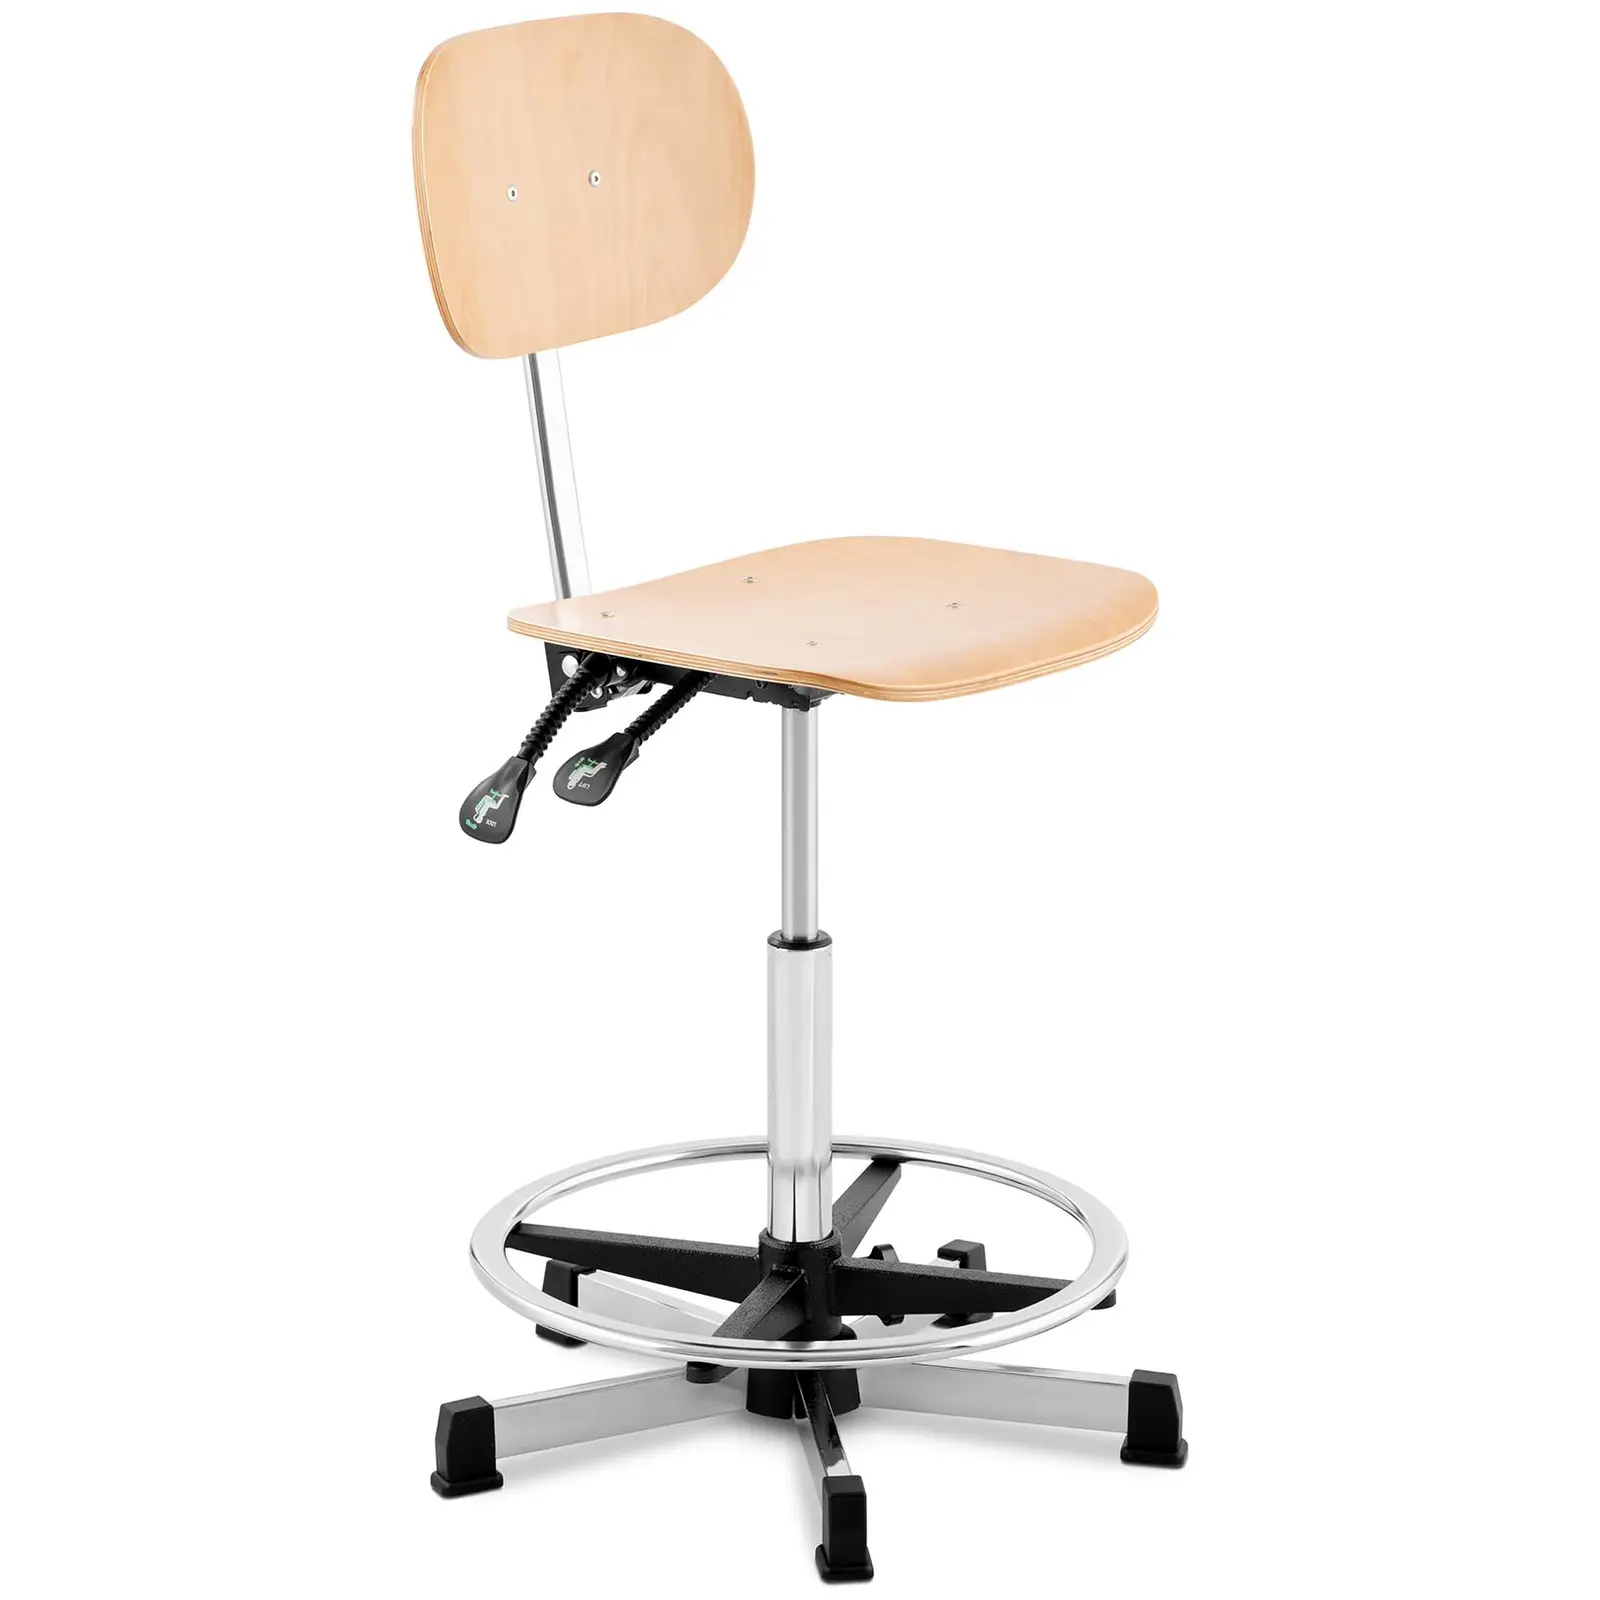 Chaise d'atelier - 120 kg - Chrome, Bois - Hauteur réglable de 550 - 800 mm | Fromm & Starck